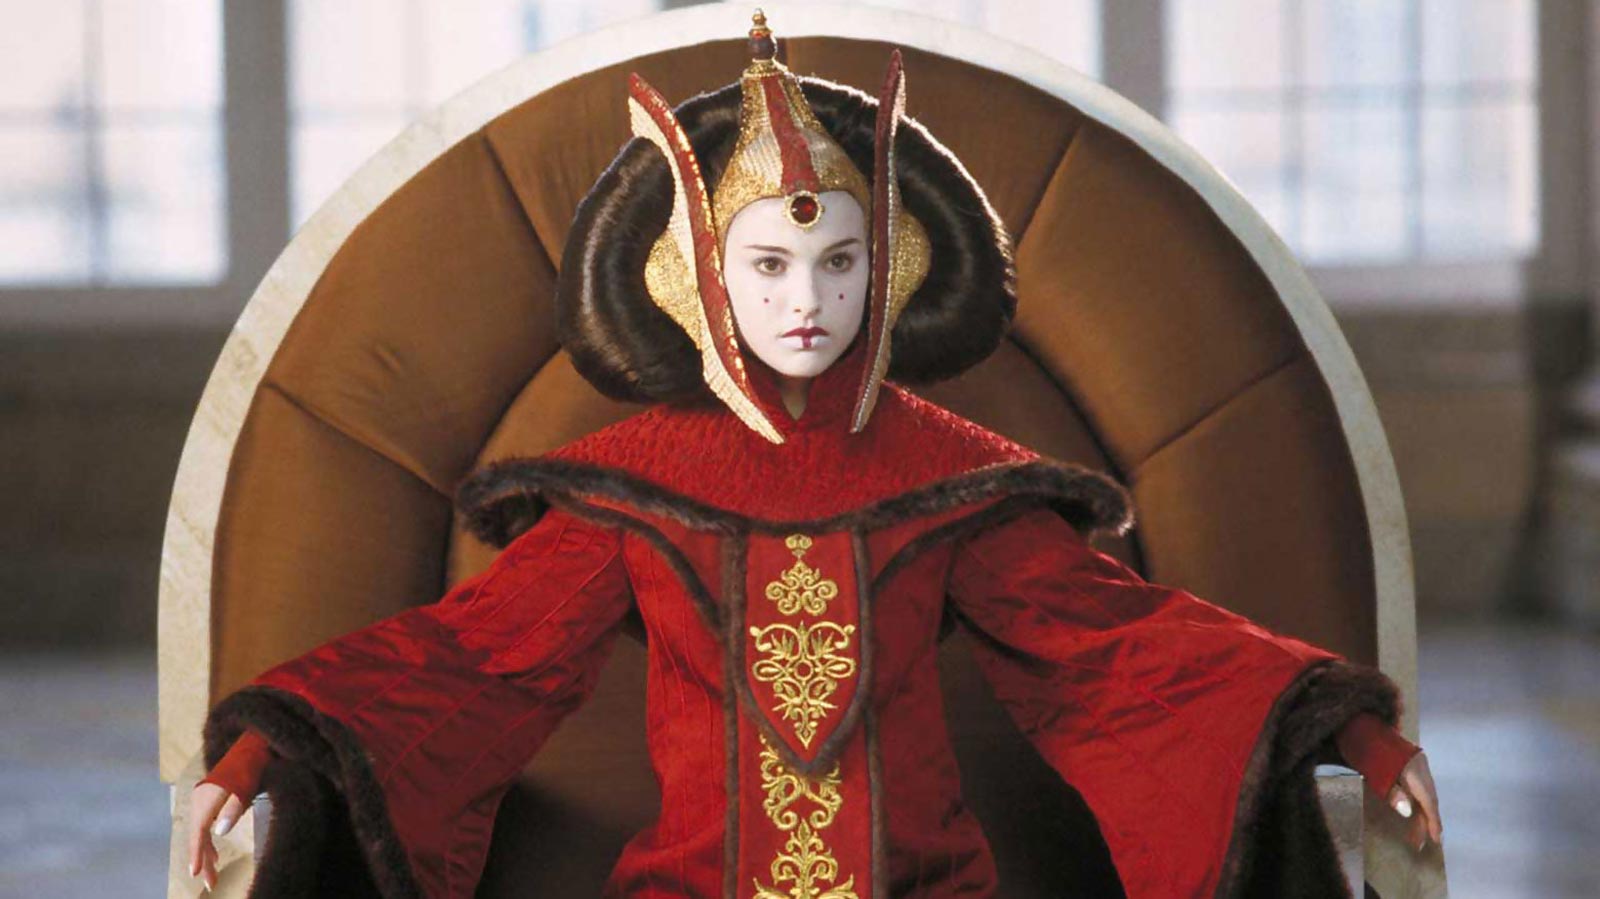 ناتالی پورتمن در نقش ملکه پادمه آمیدالا در روپوش قرمز با آرایش خاص چهره در فیلم تهدید شبح